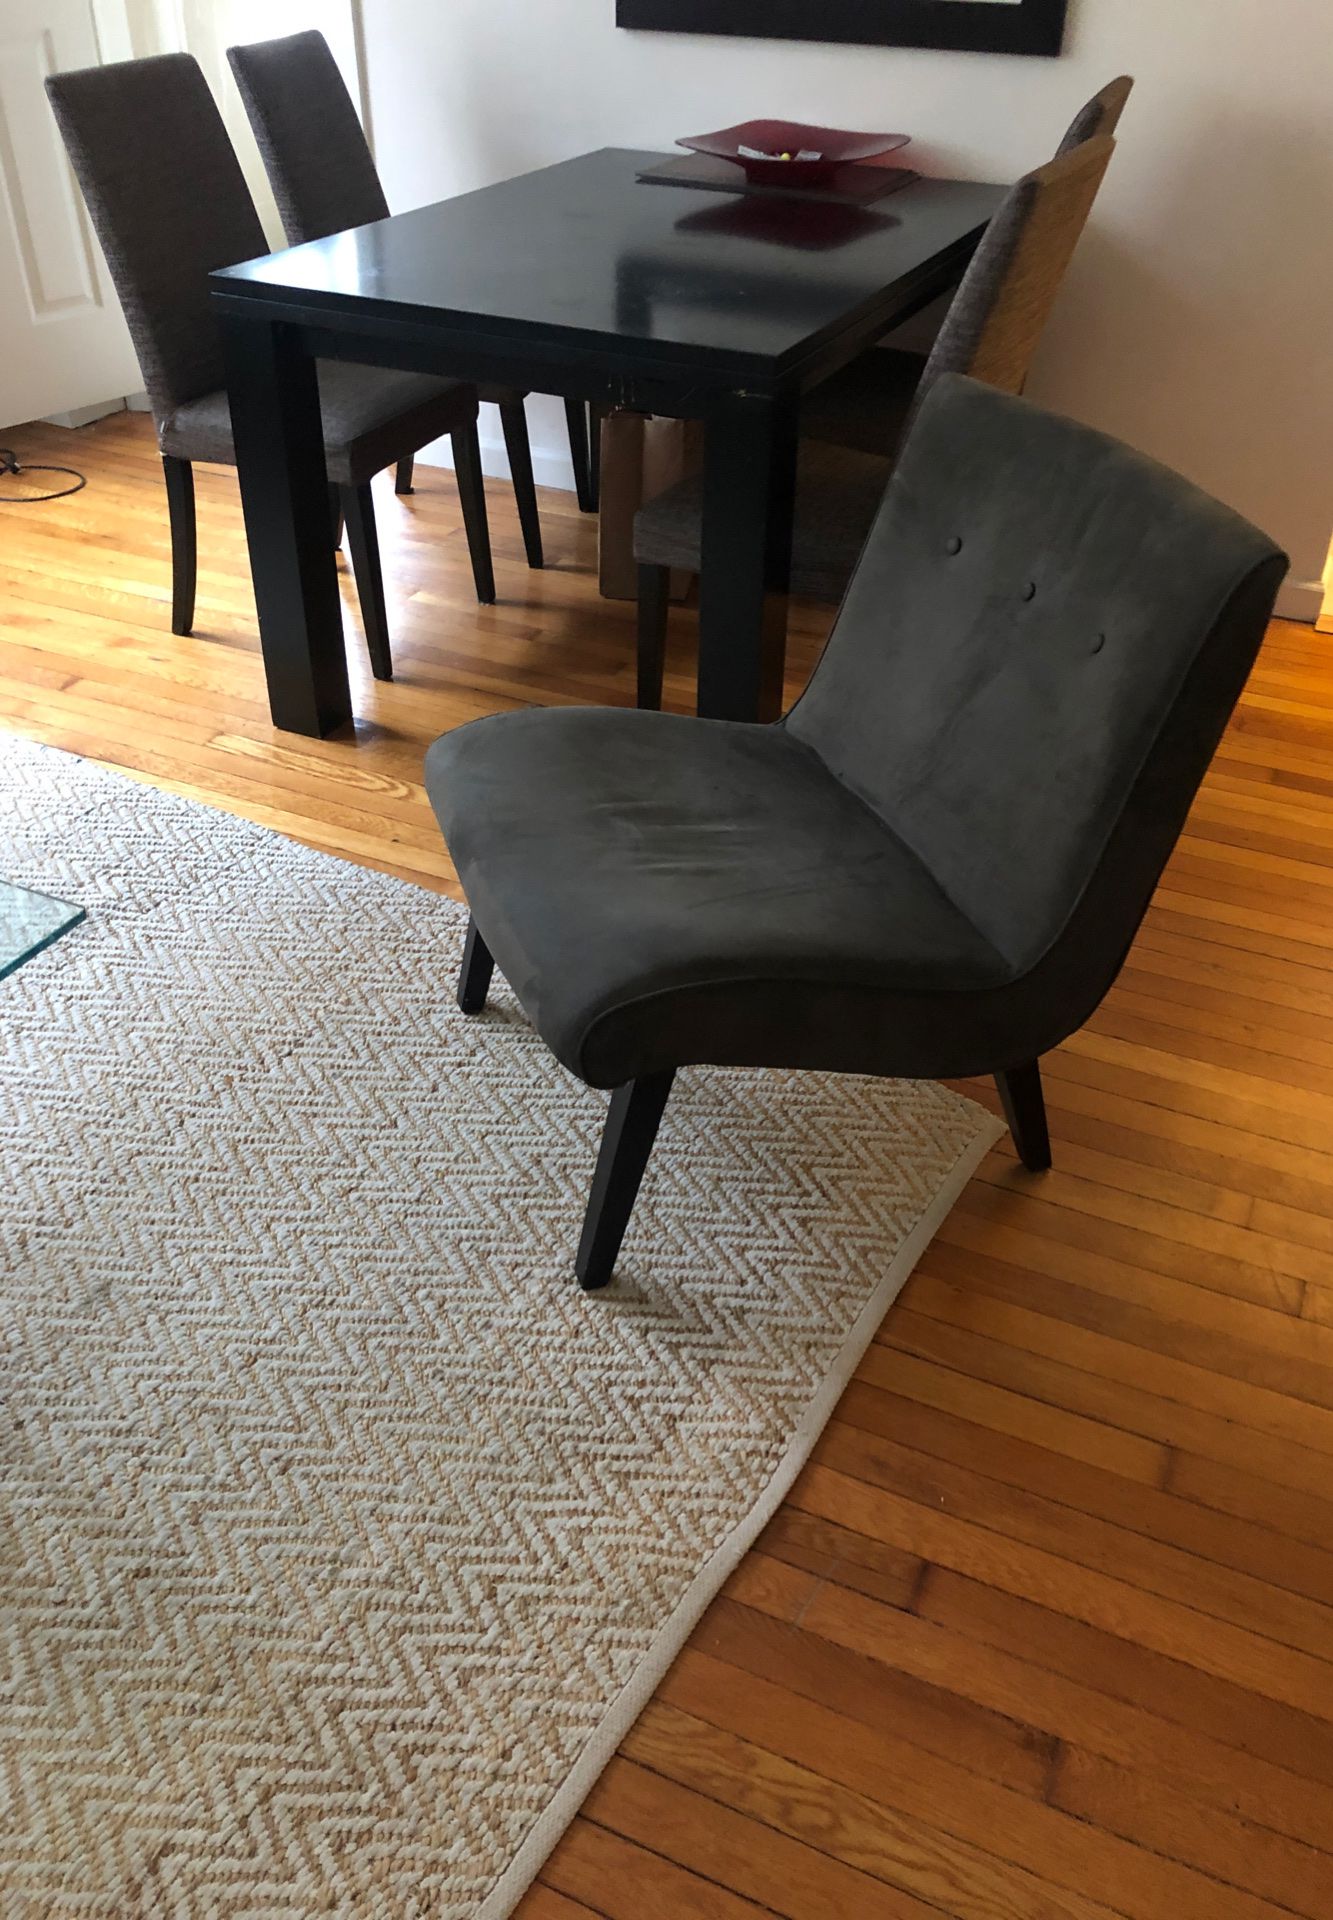 Arm chair /$30